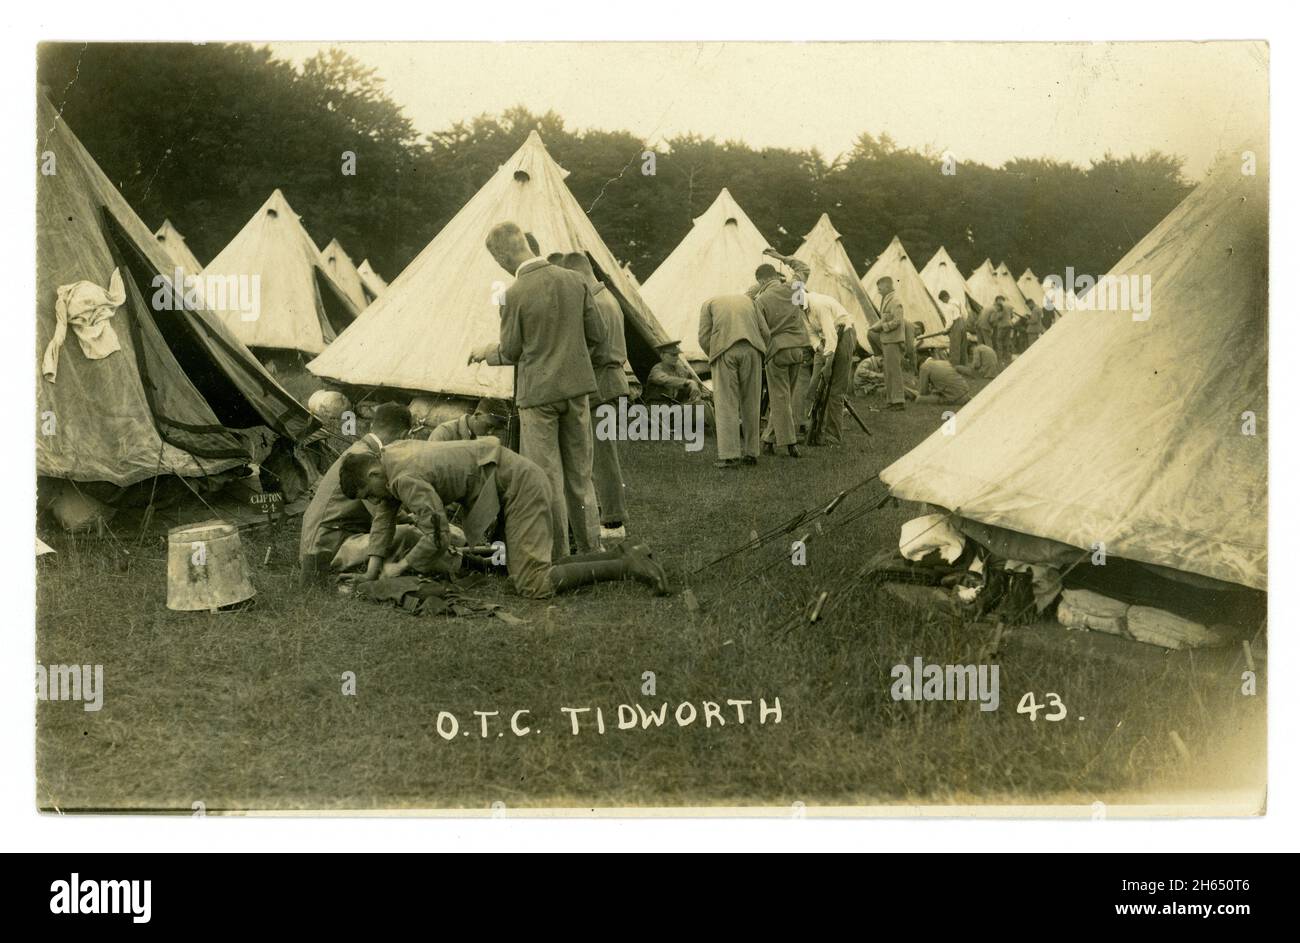 Tarjeta postal de WW1 años de edad de jóvenes reclutas en una unidad de entrenamiento de liderazgo militar, Cuerpo de entrenamiento de oficiales, (OTC) campo de entrenamiento, estableciendo campamento. Tidworth, Wiltshire, Inglaterra, Reino Unido Foto de stock